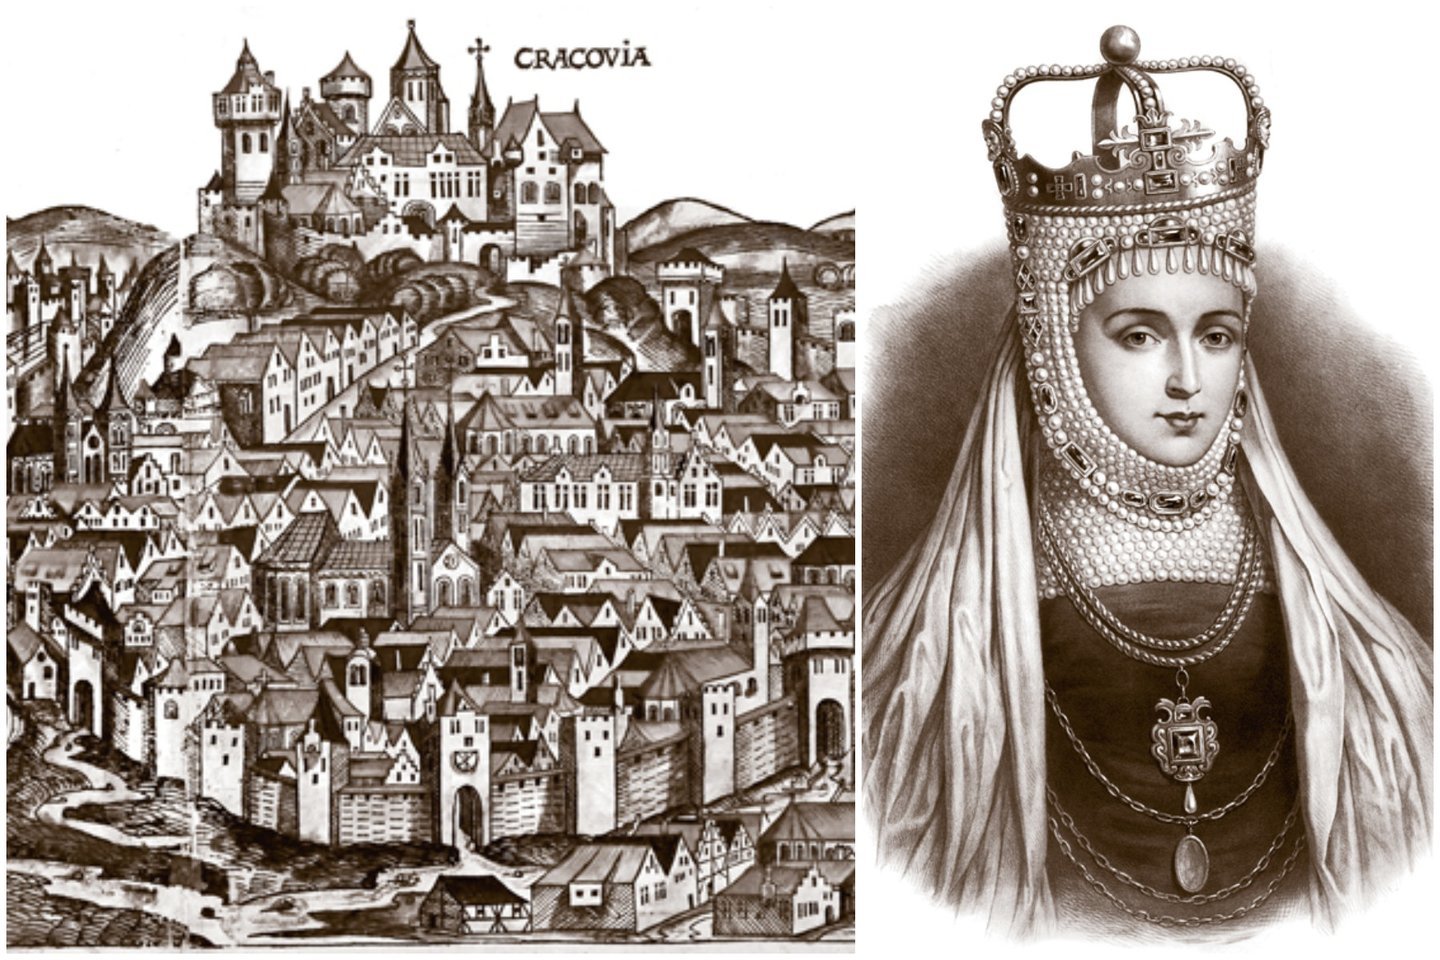 Iliuzija tęsėsi ir toliau, kai po keturių dienų karalius su žmona iškilmingai įvažiavo į Krokuvą. Buvo 1549 metų vasario 13-oji.<br>Leidėjų nuotr.